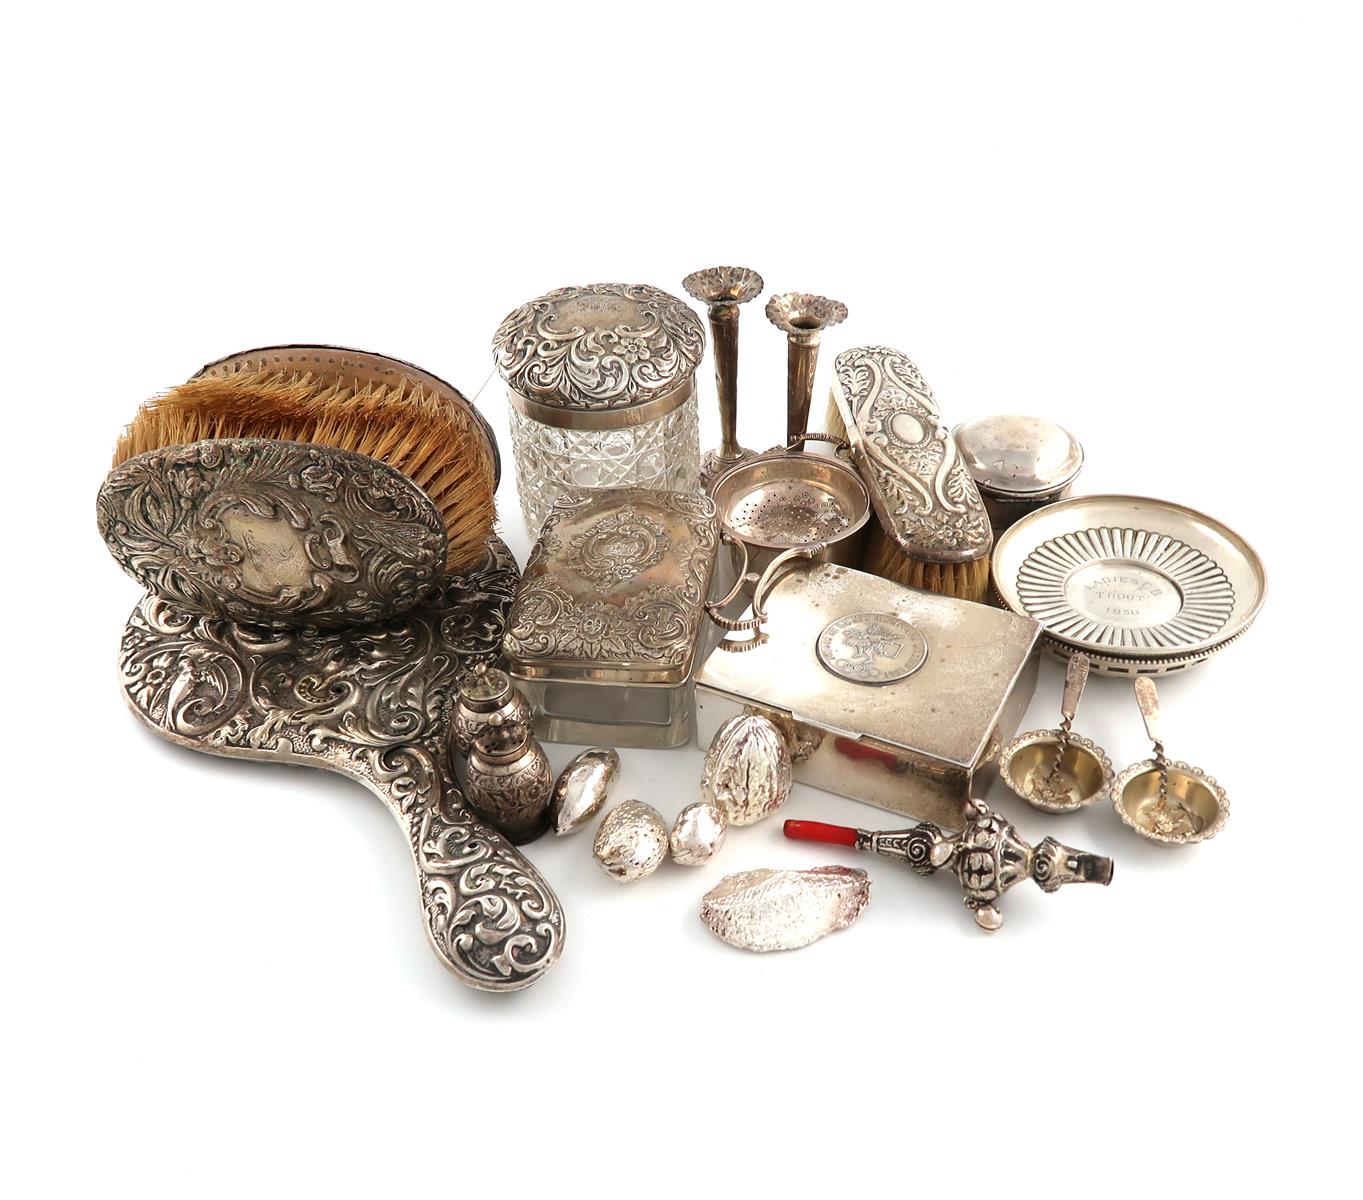 λA mixed lot of silver items, various dates and makers, comprising: a Victorian baby's rattle with a